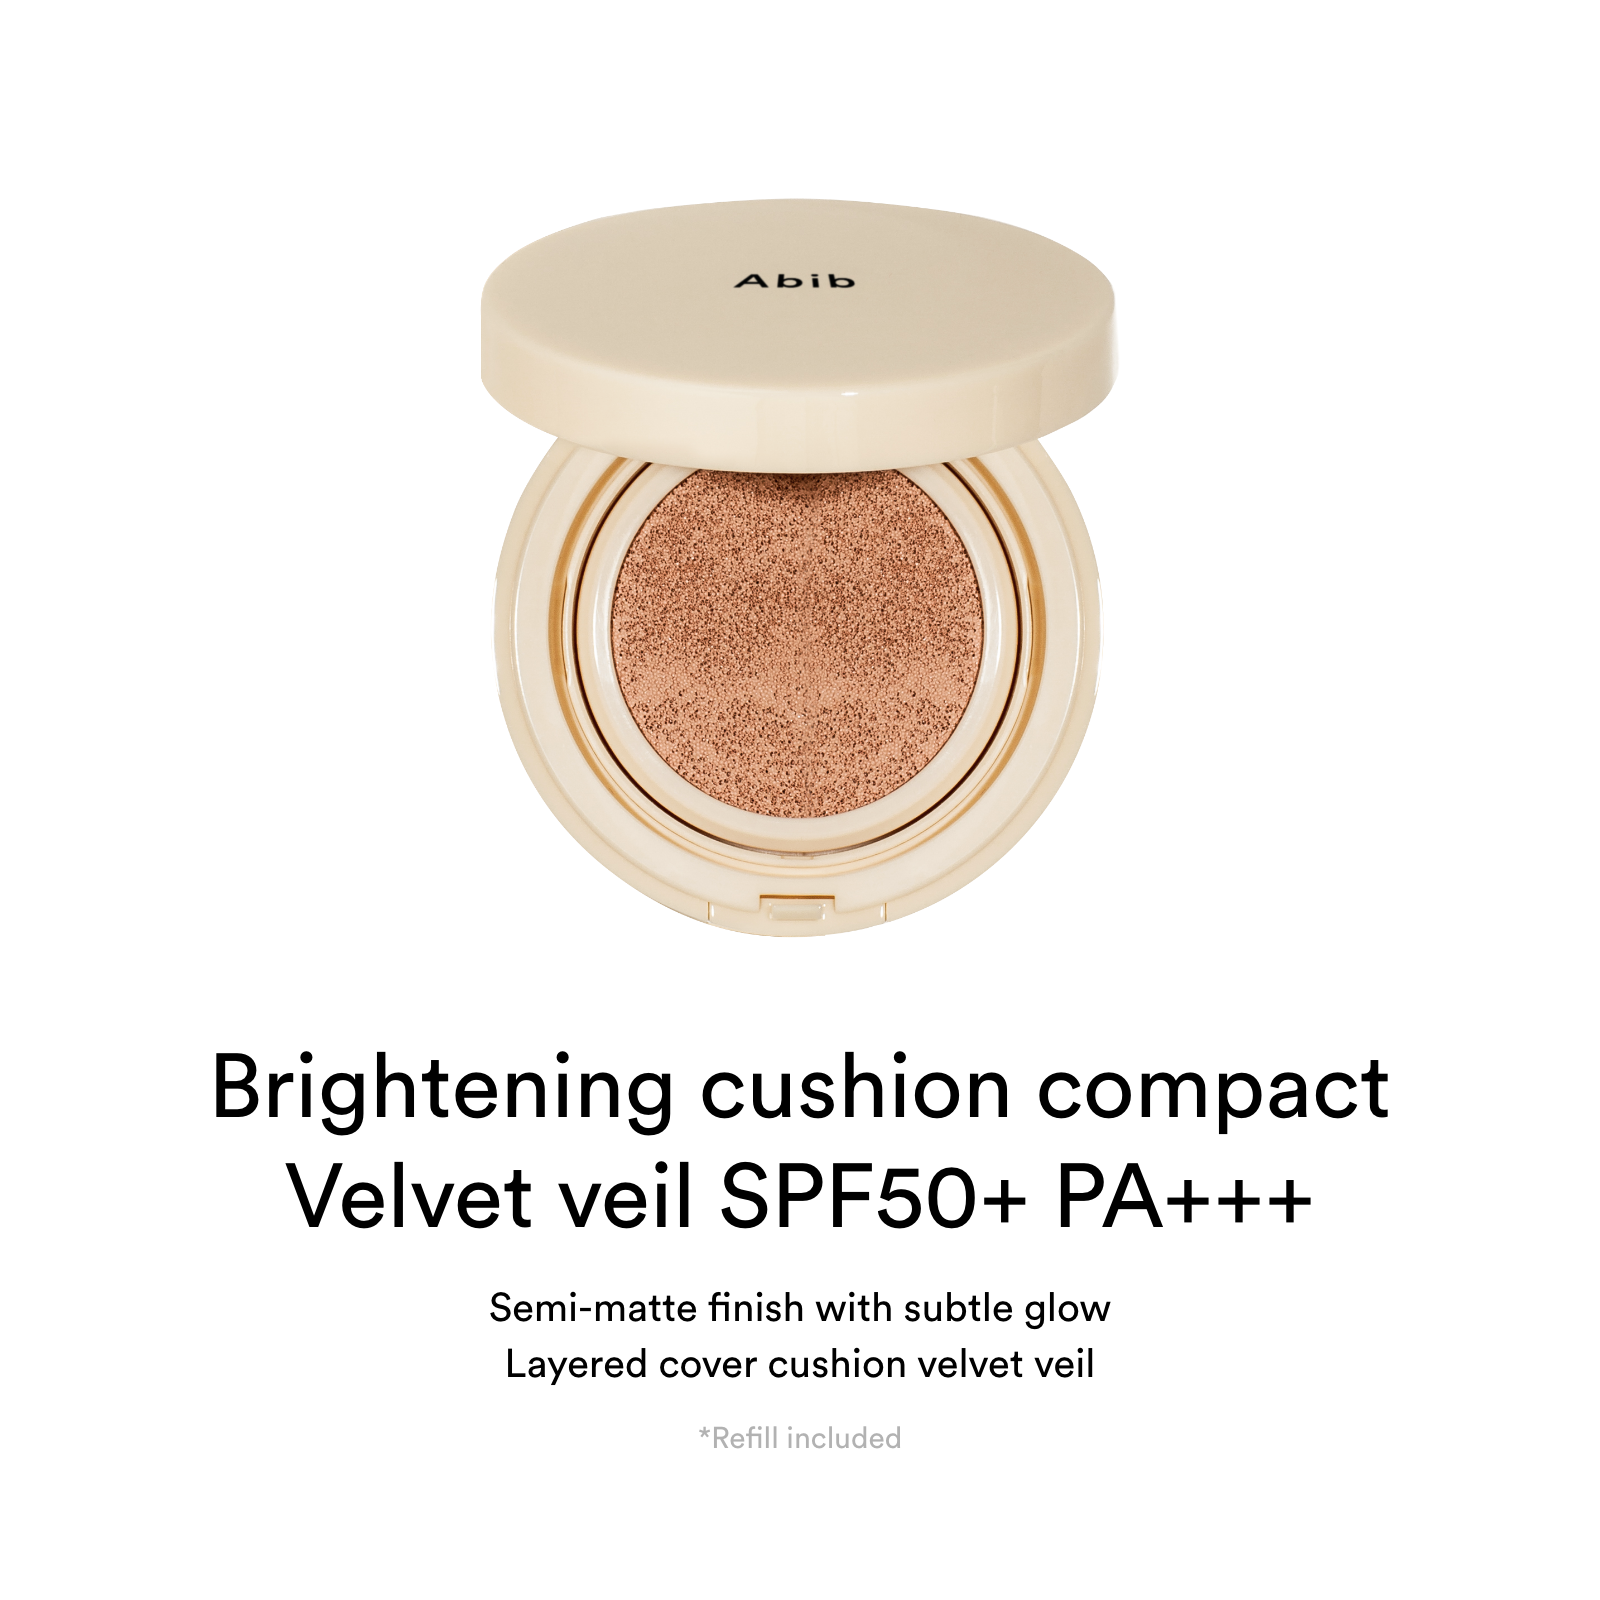 Velvet veil SPF50+ PA+++